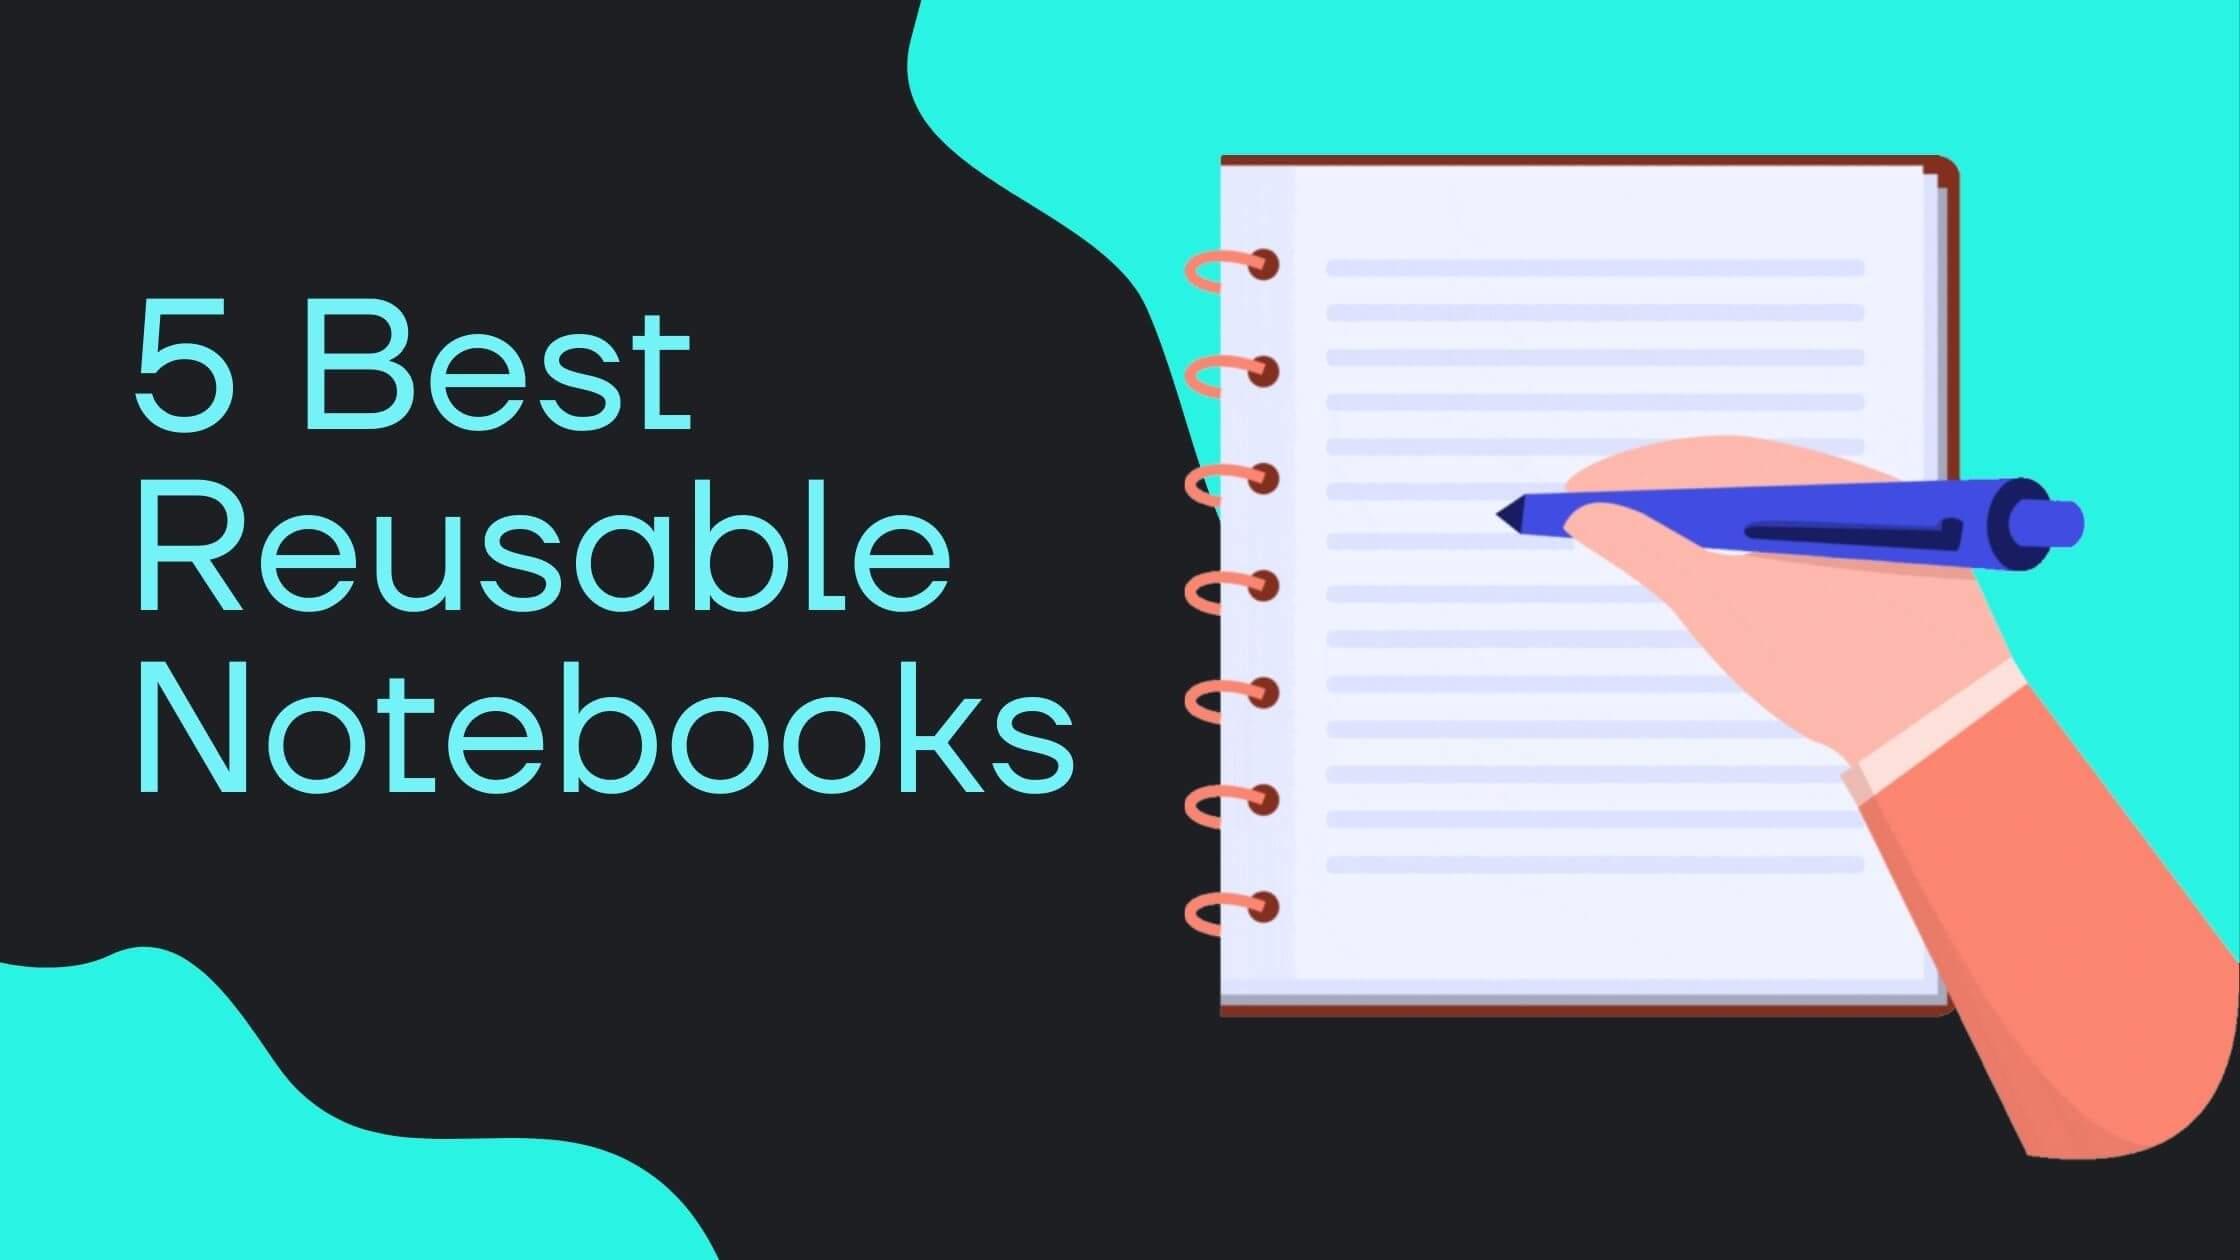 6 Best Reusable Notebooks